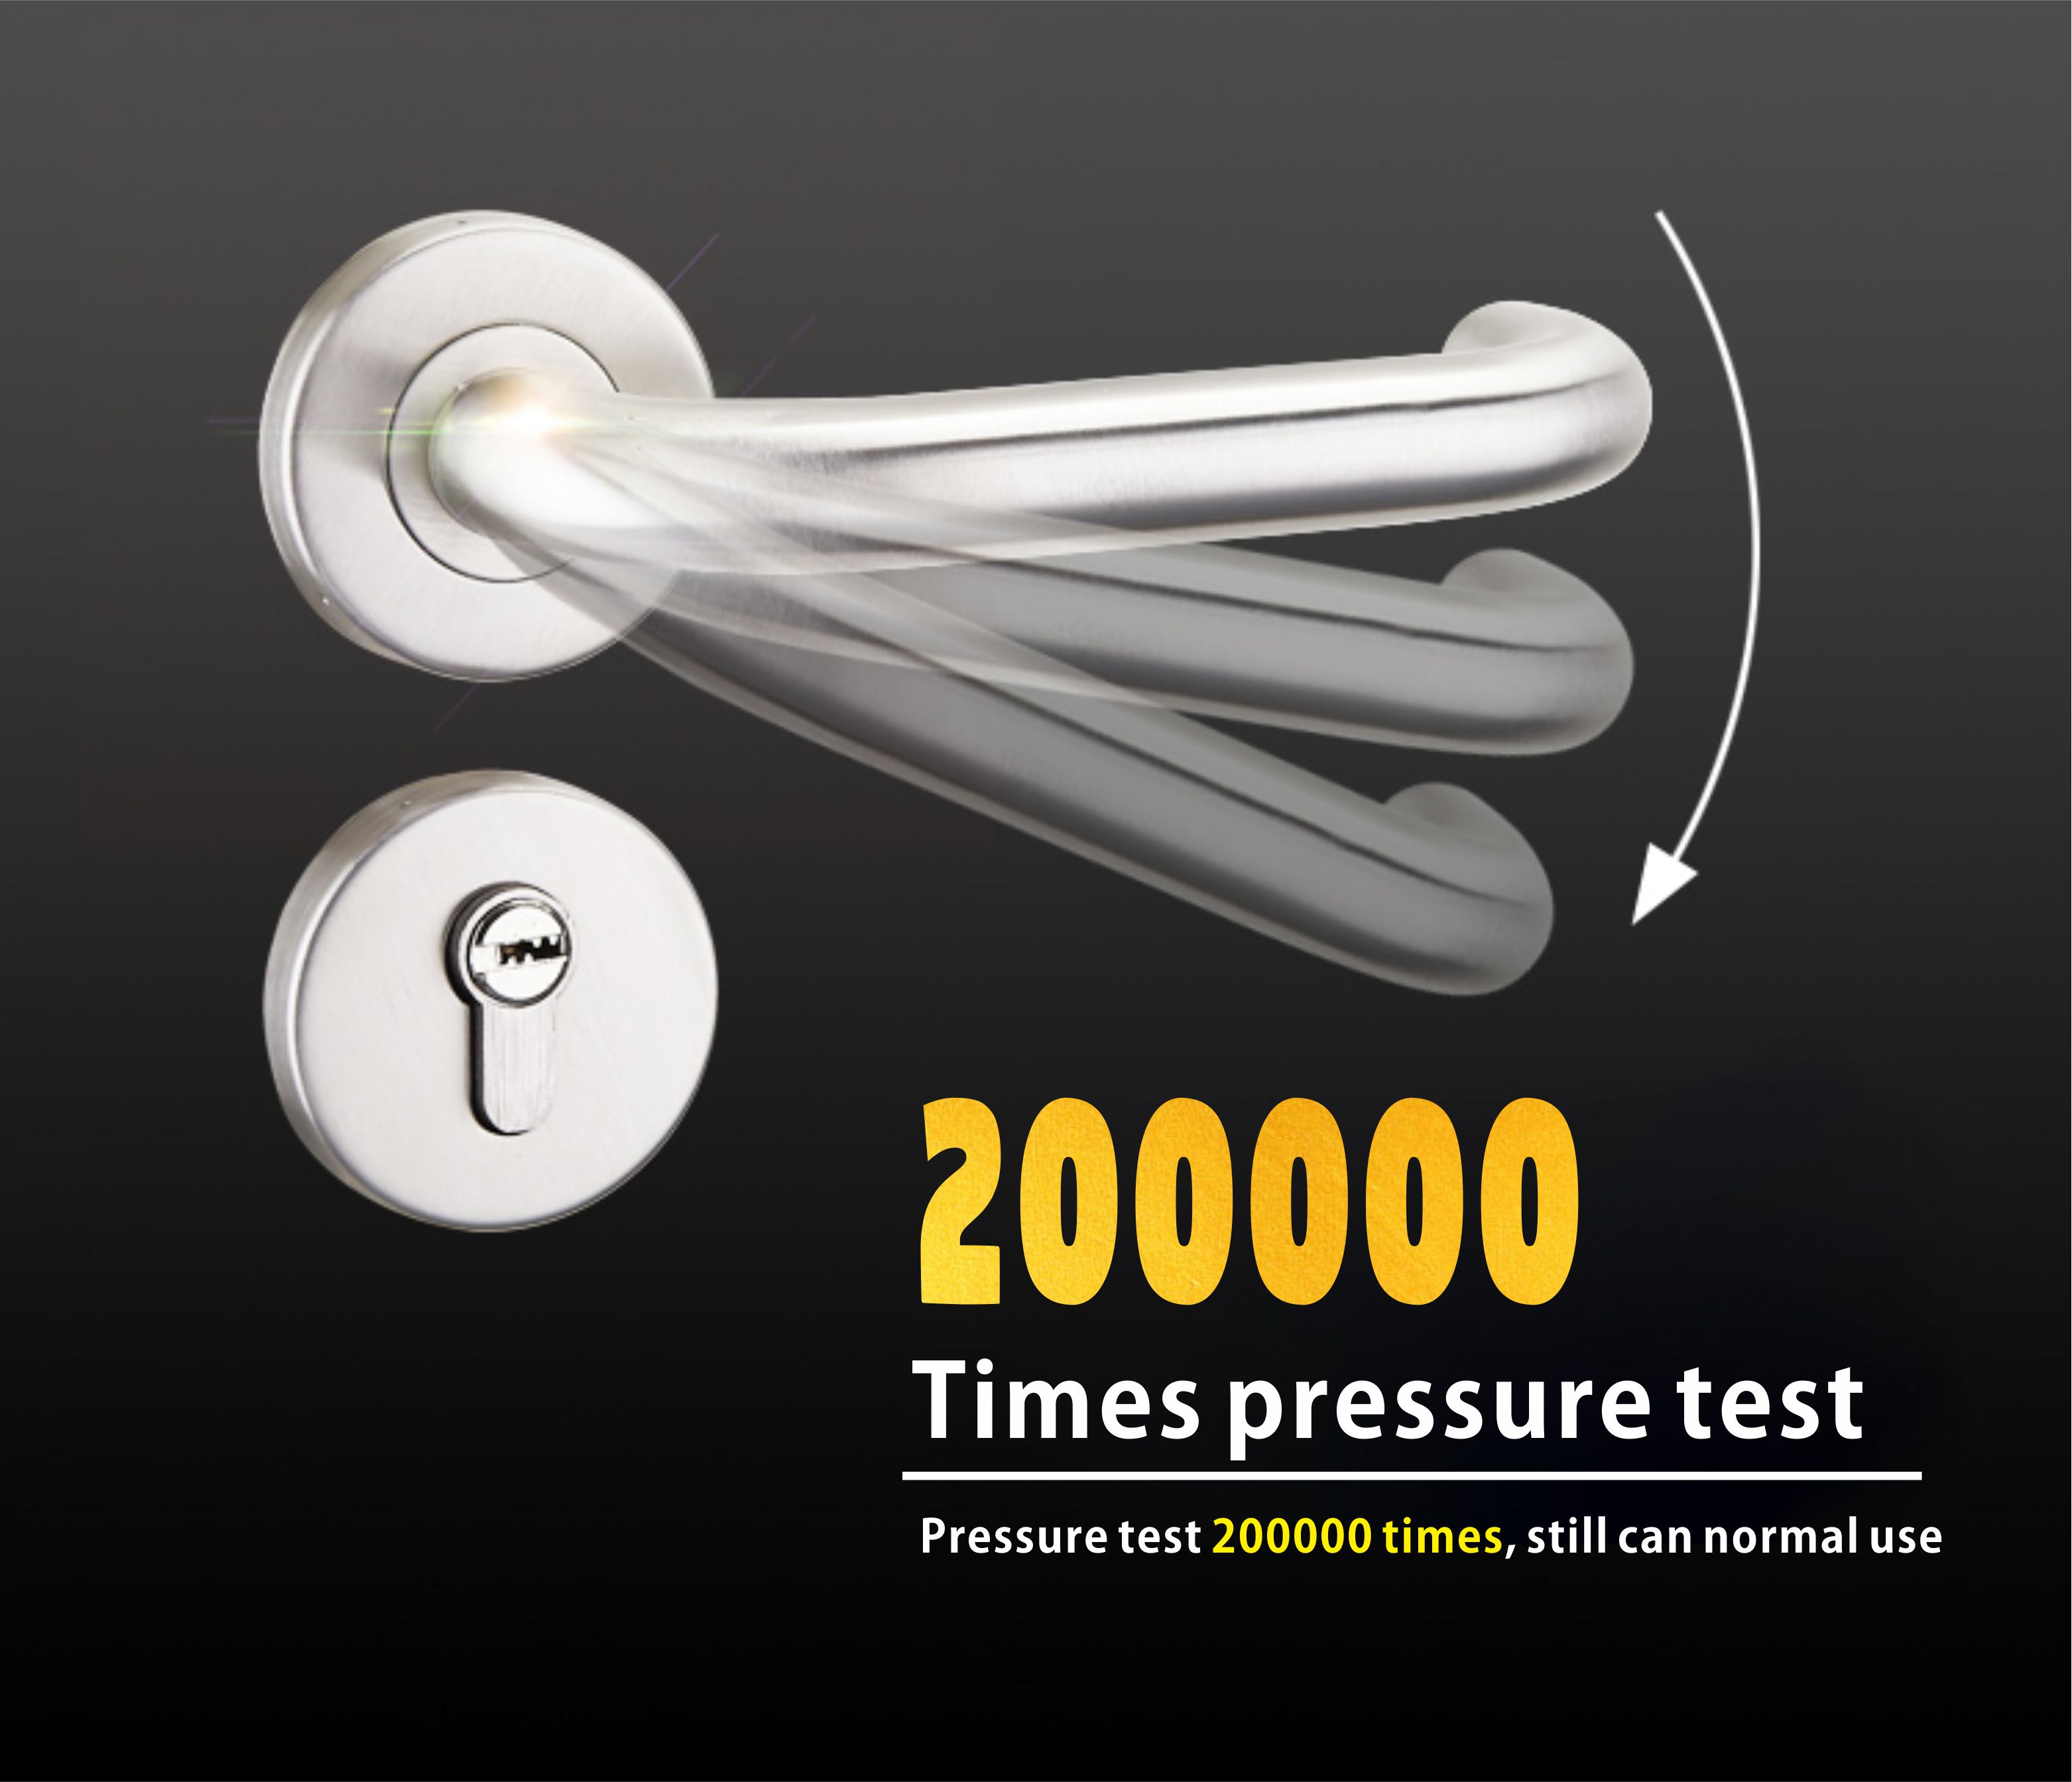 200,000 test doorknobs